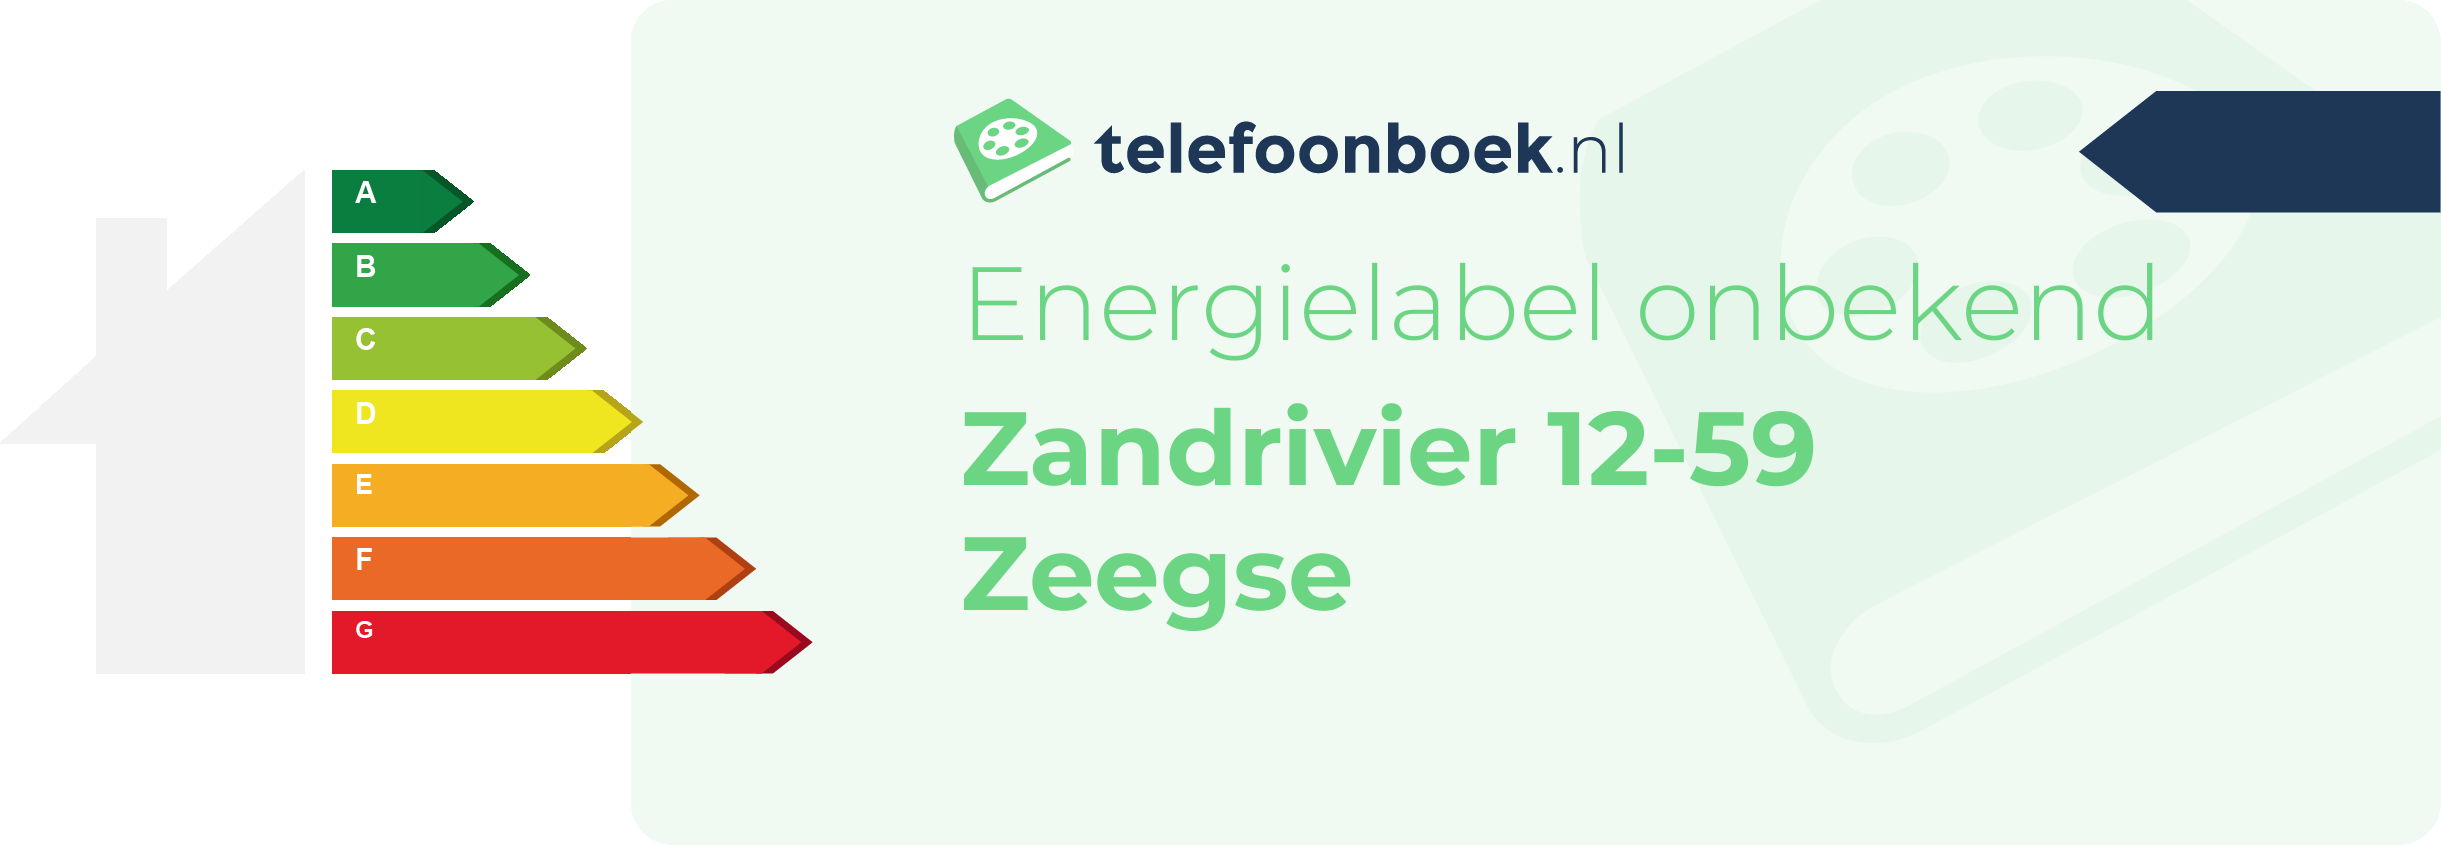 Energielabel Zandrivier 12-59 Zeegse